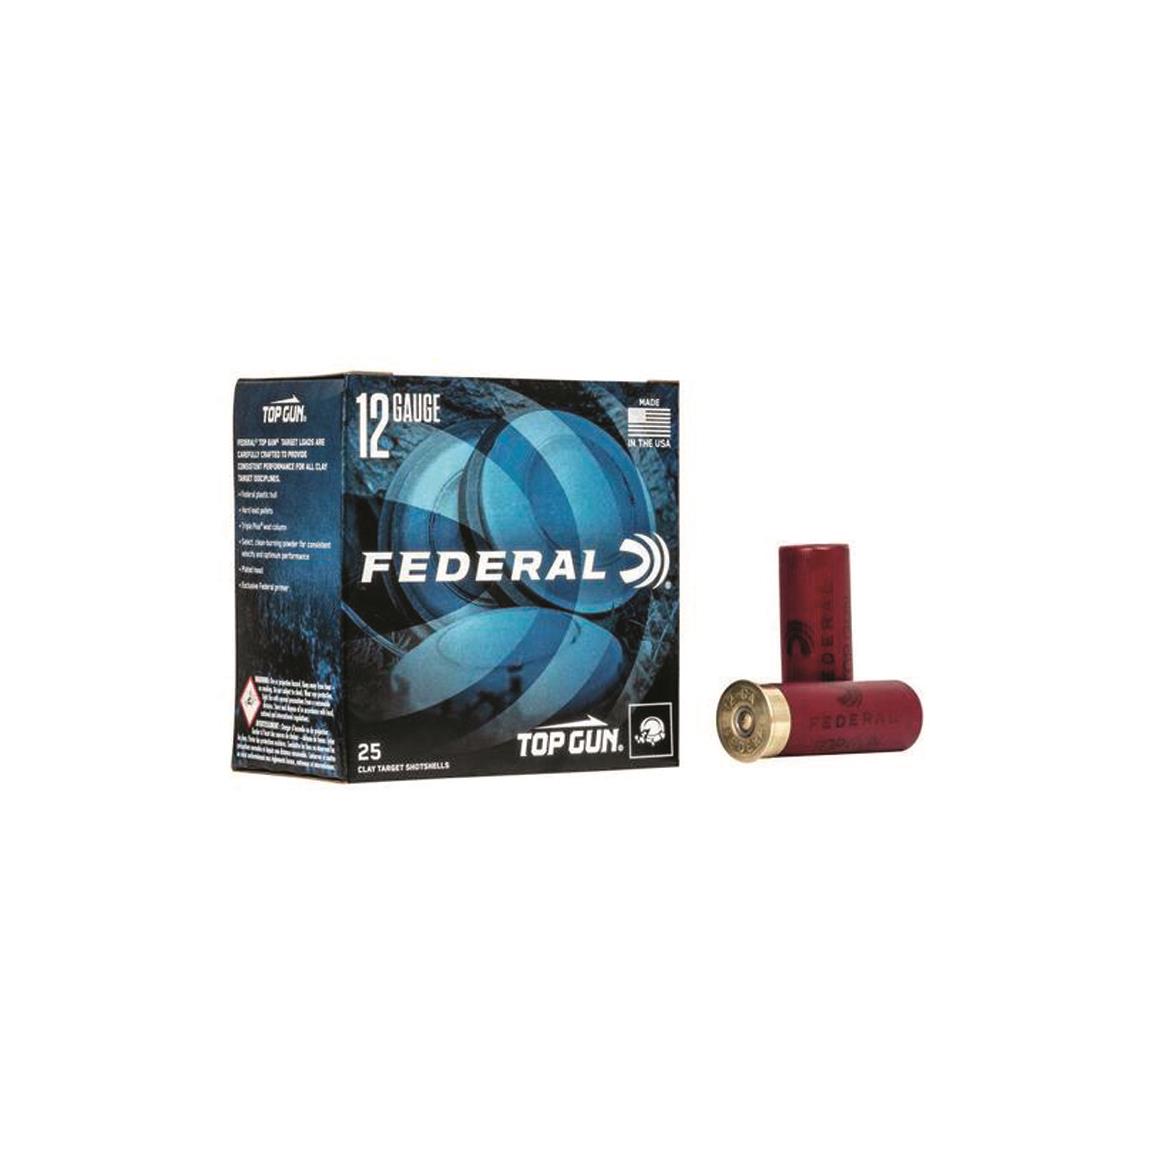 Federal Top Gun Target, 12 Gauge, 2 3/4", 1 1/8 oz. Shotshells, 250 Rounds